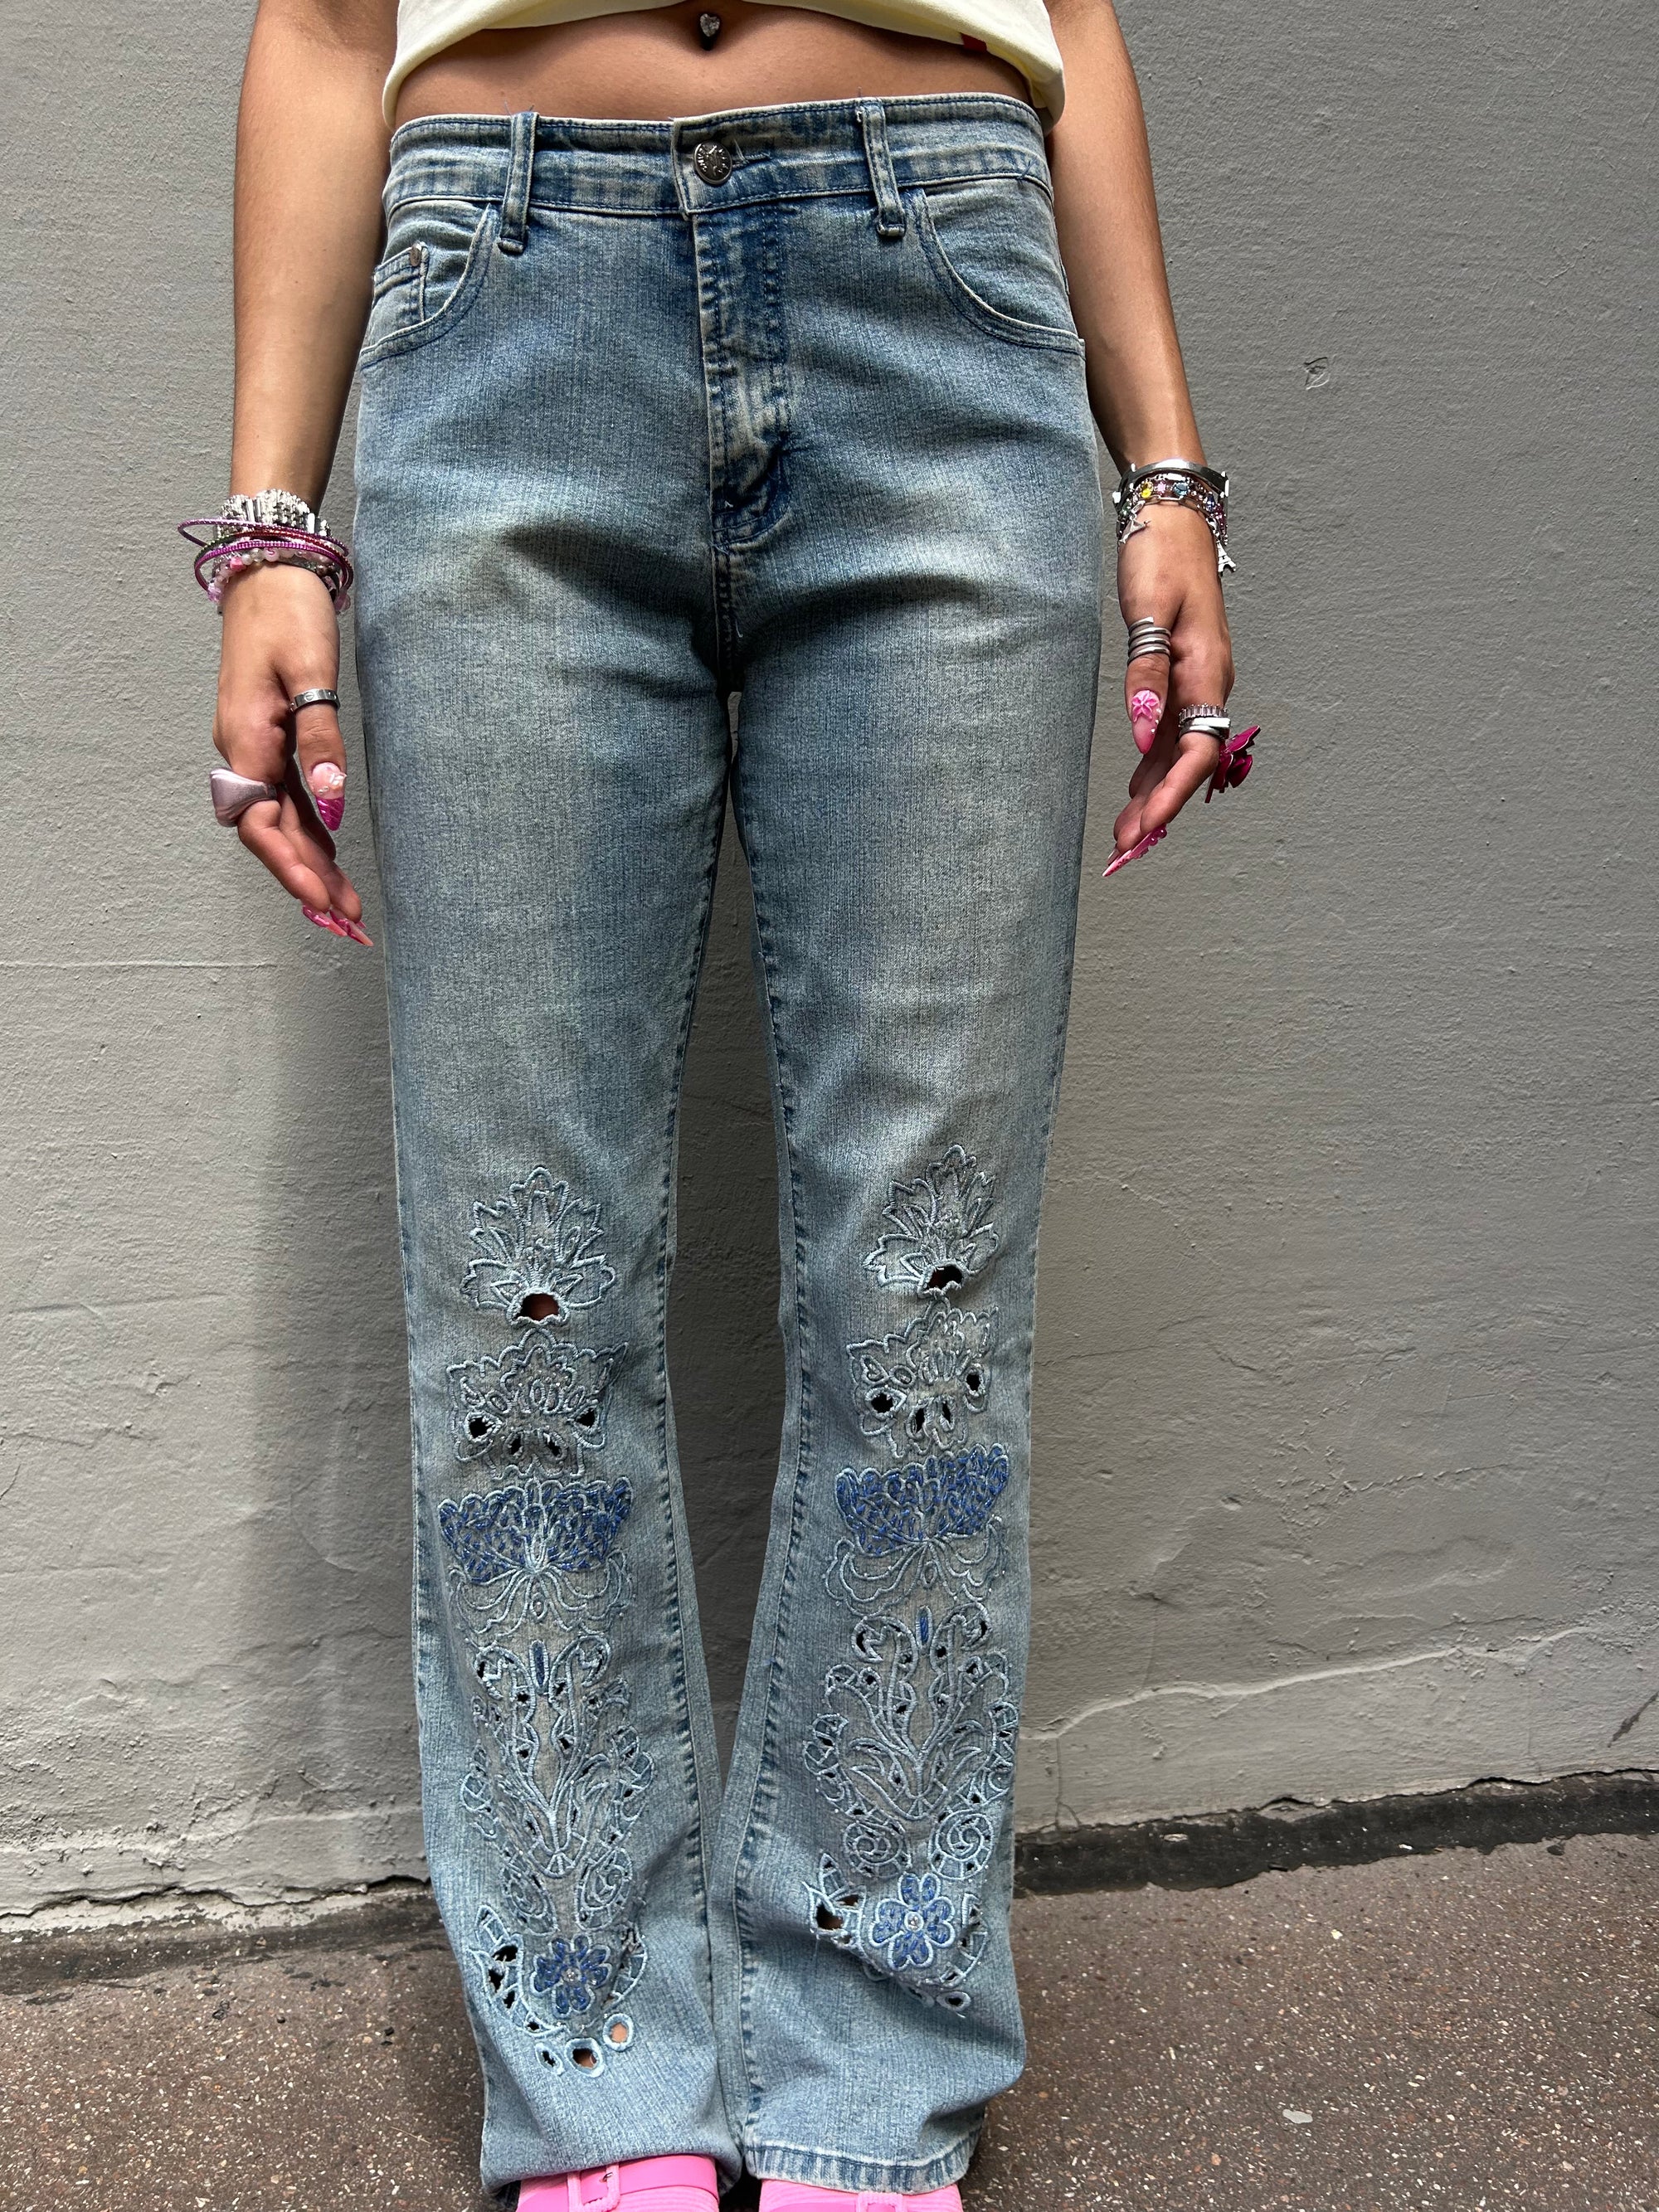 Tragebild Vintage Flared Flower Stitching Jeans s vor grauer wand 